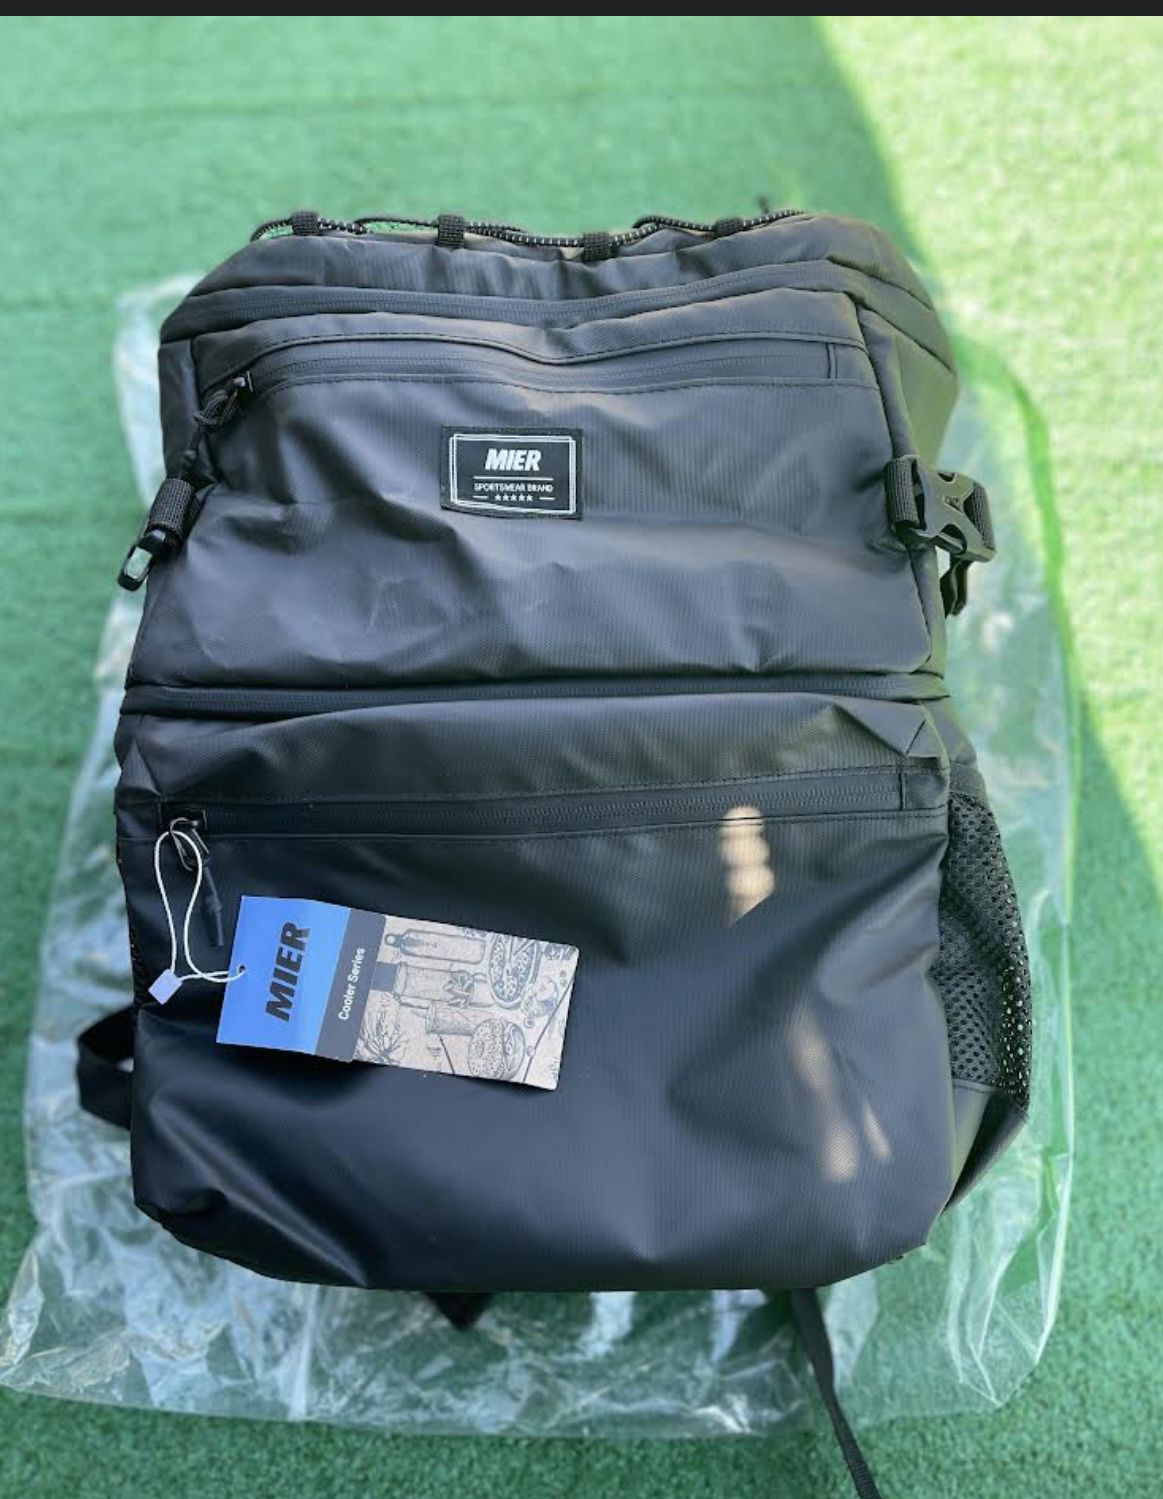 Brand New Miur Black Backpack Cooler